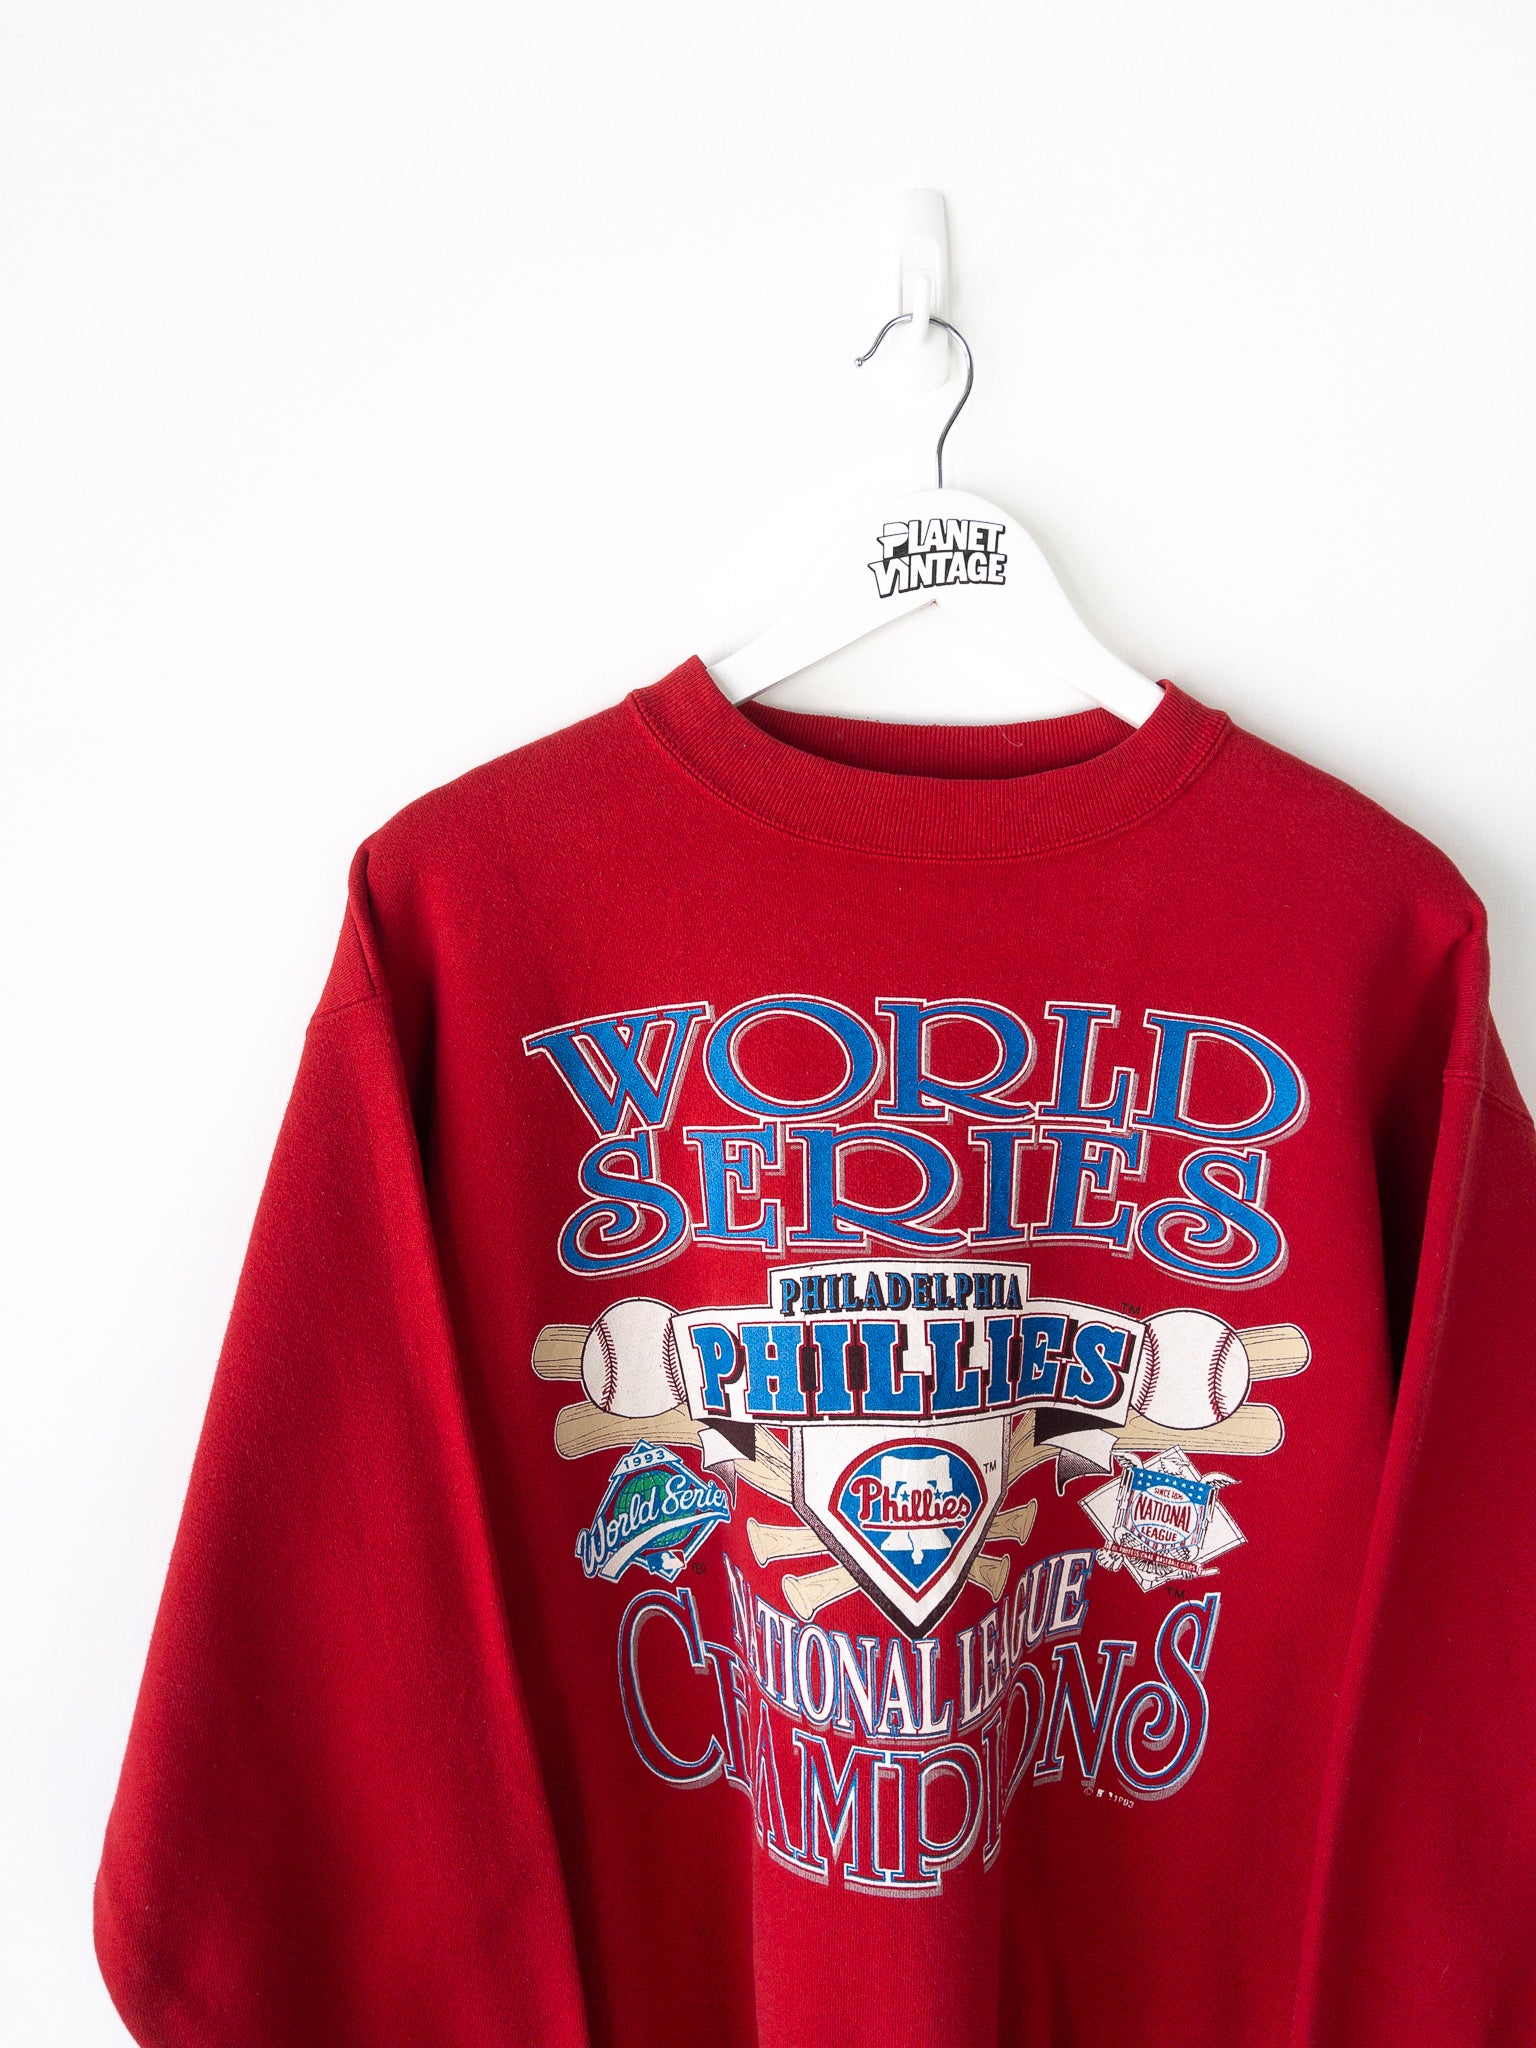 VIntage Philadelphia Phillies 1993 Sweatshirt (L)